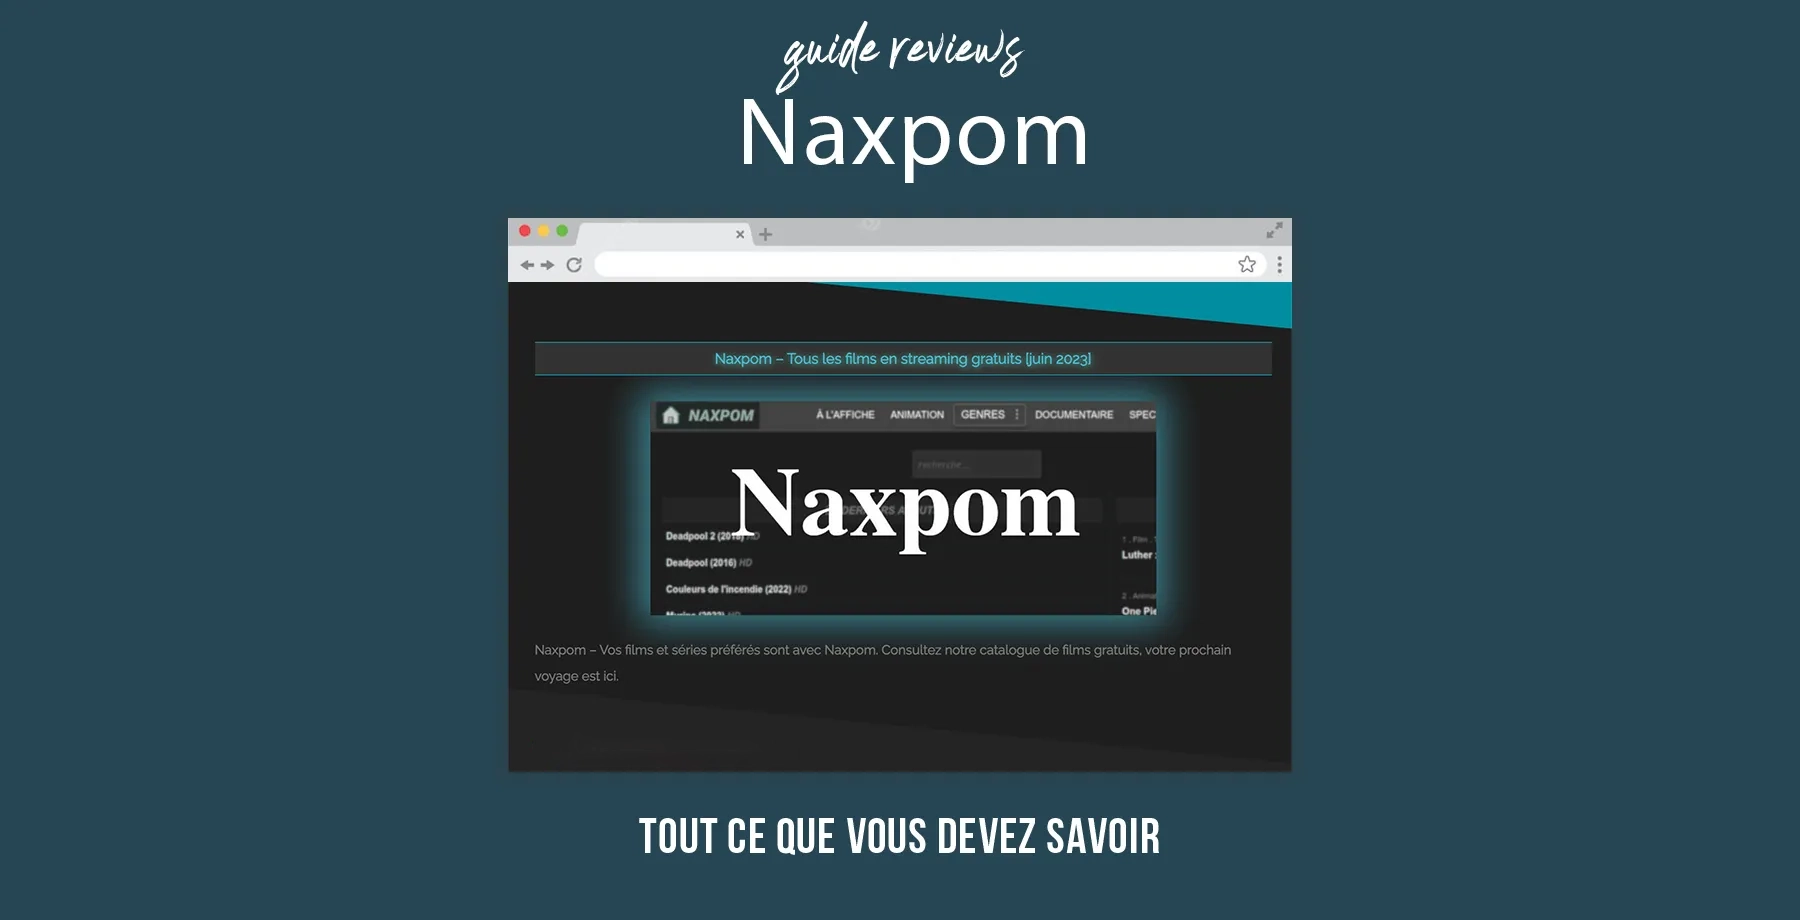 Naxpom : Voici le nouveau lien d’accès au site